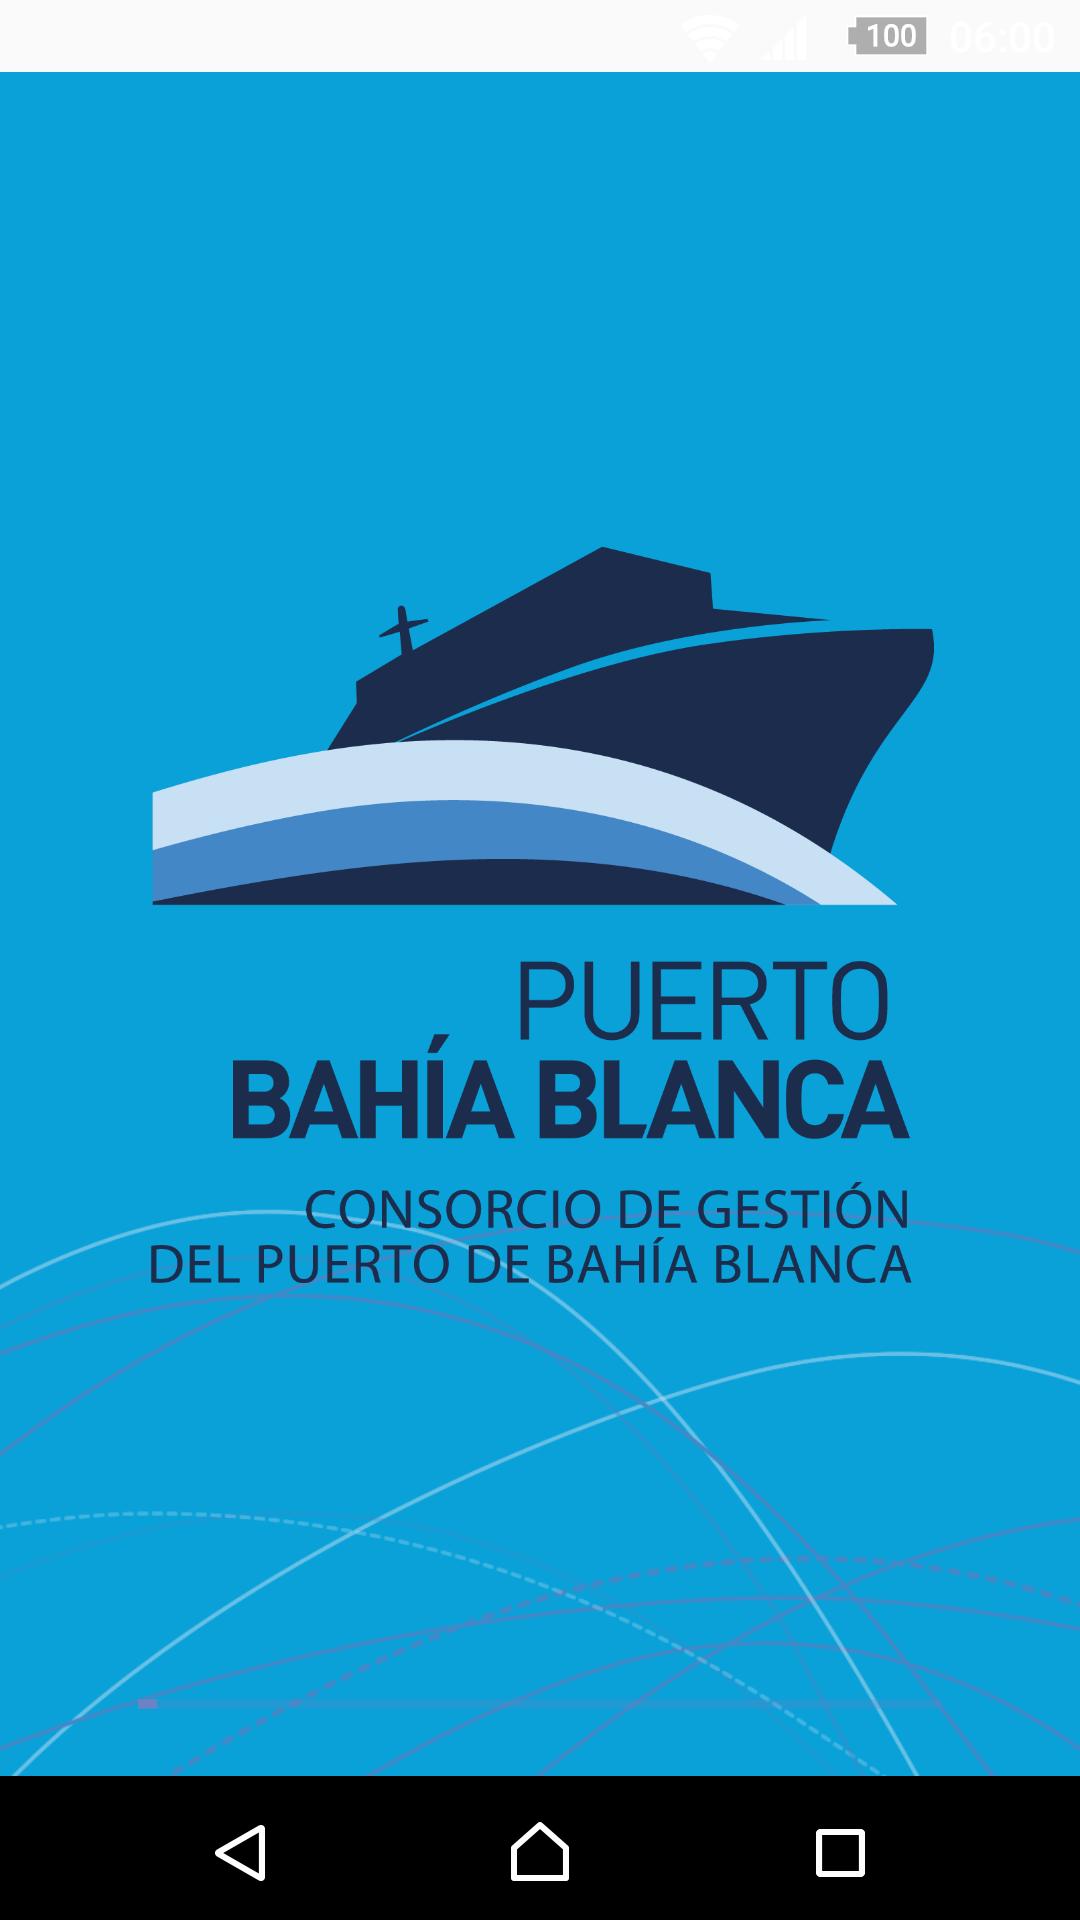 Consorcio de Gestión del Puerto de Bahía Blanca 2.1 Screenshot 1